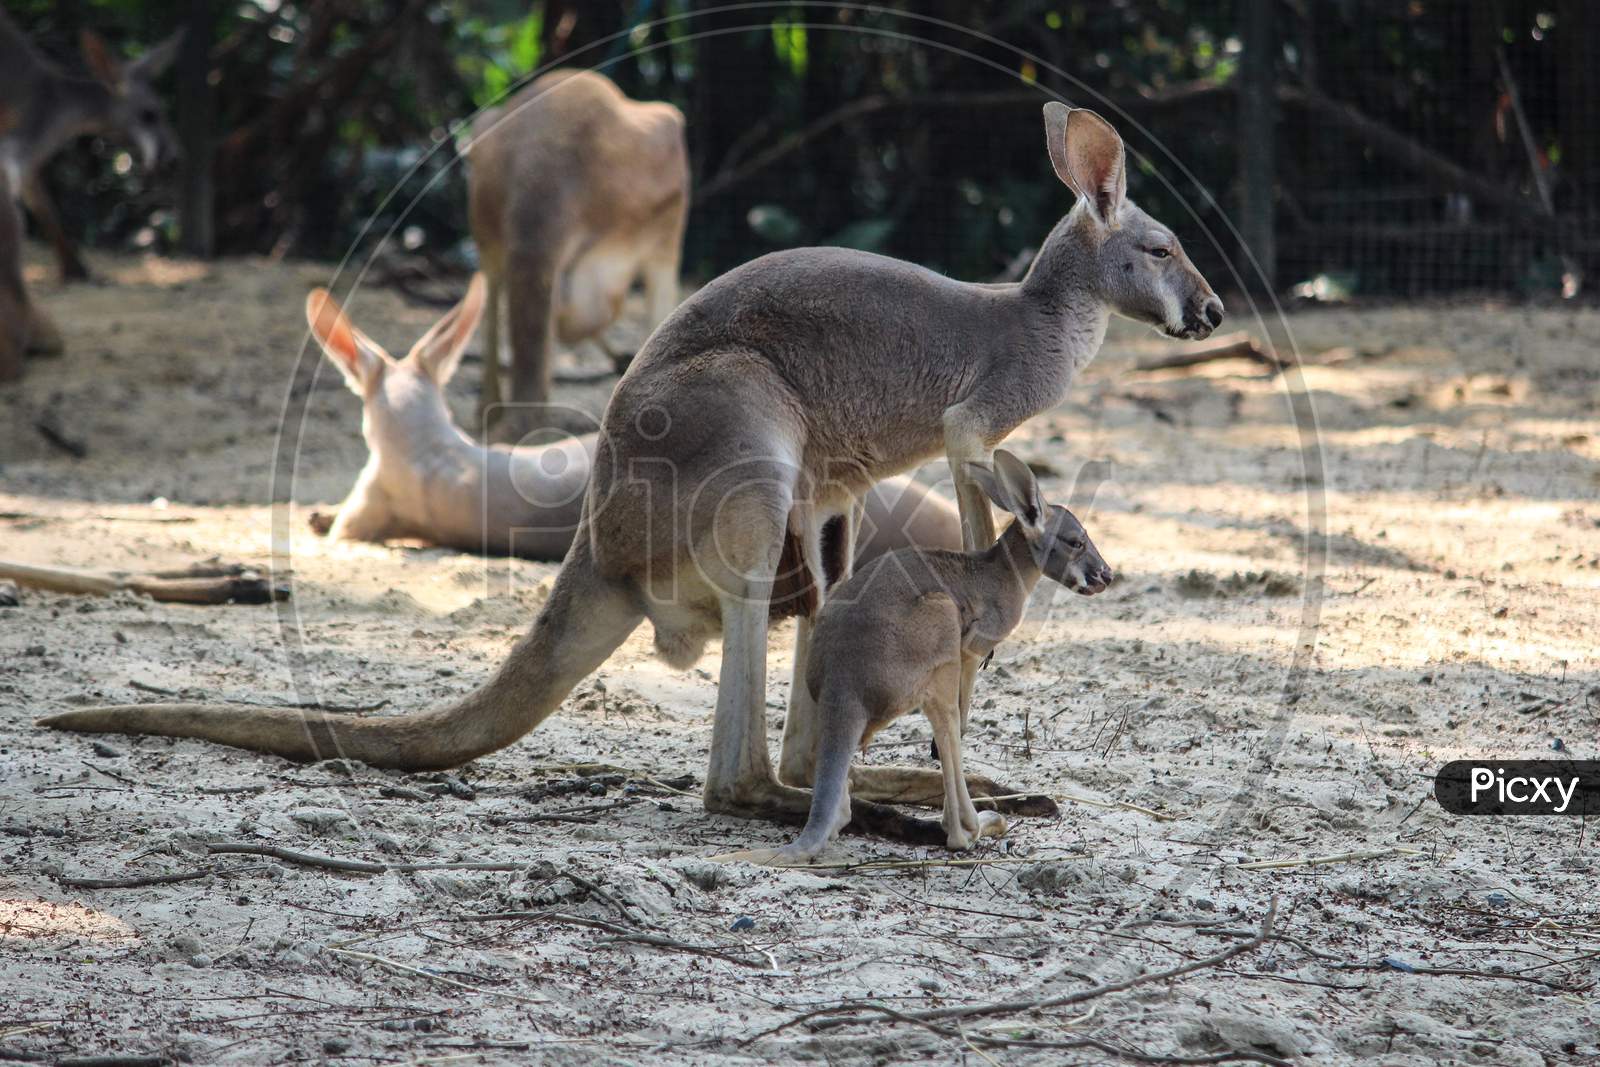 Baby kangaroo with mother kangaroo